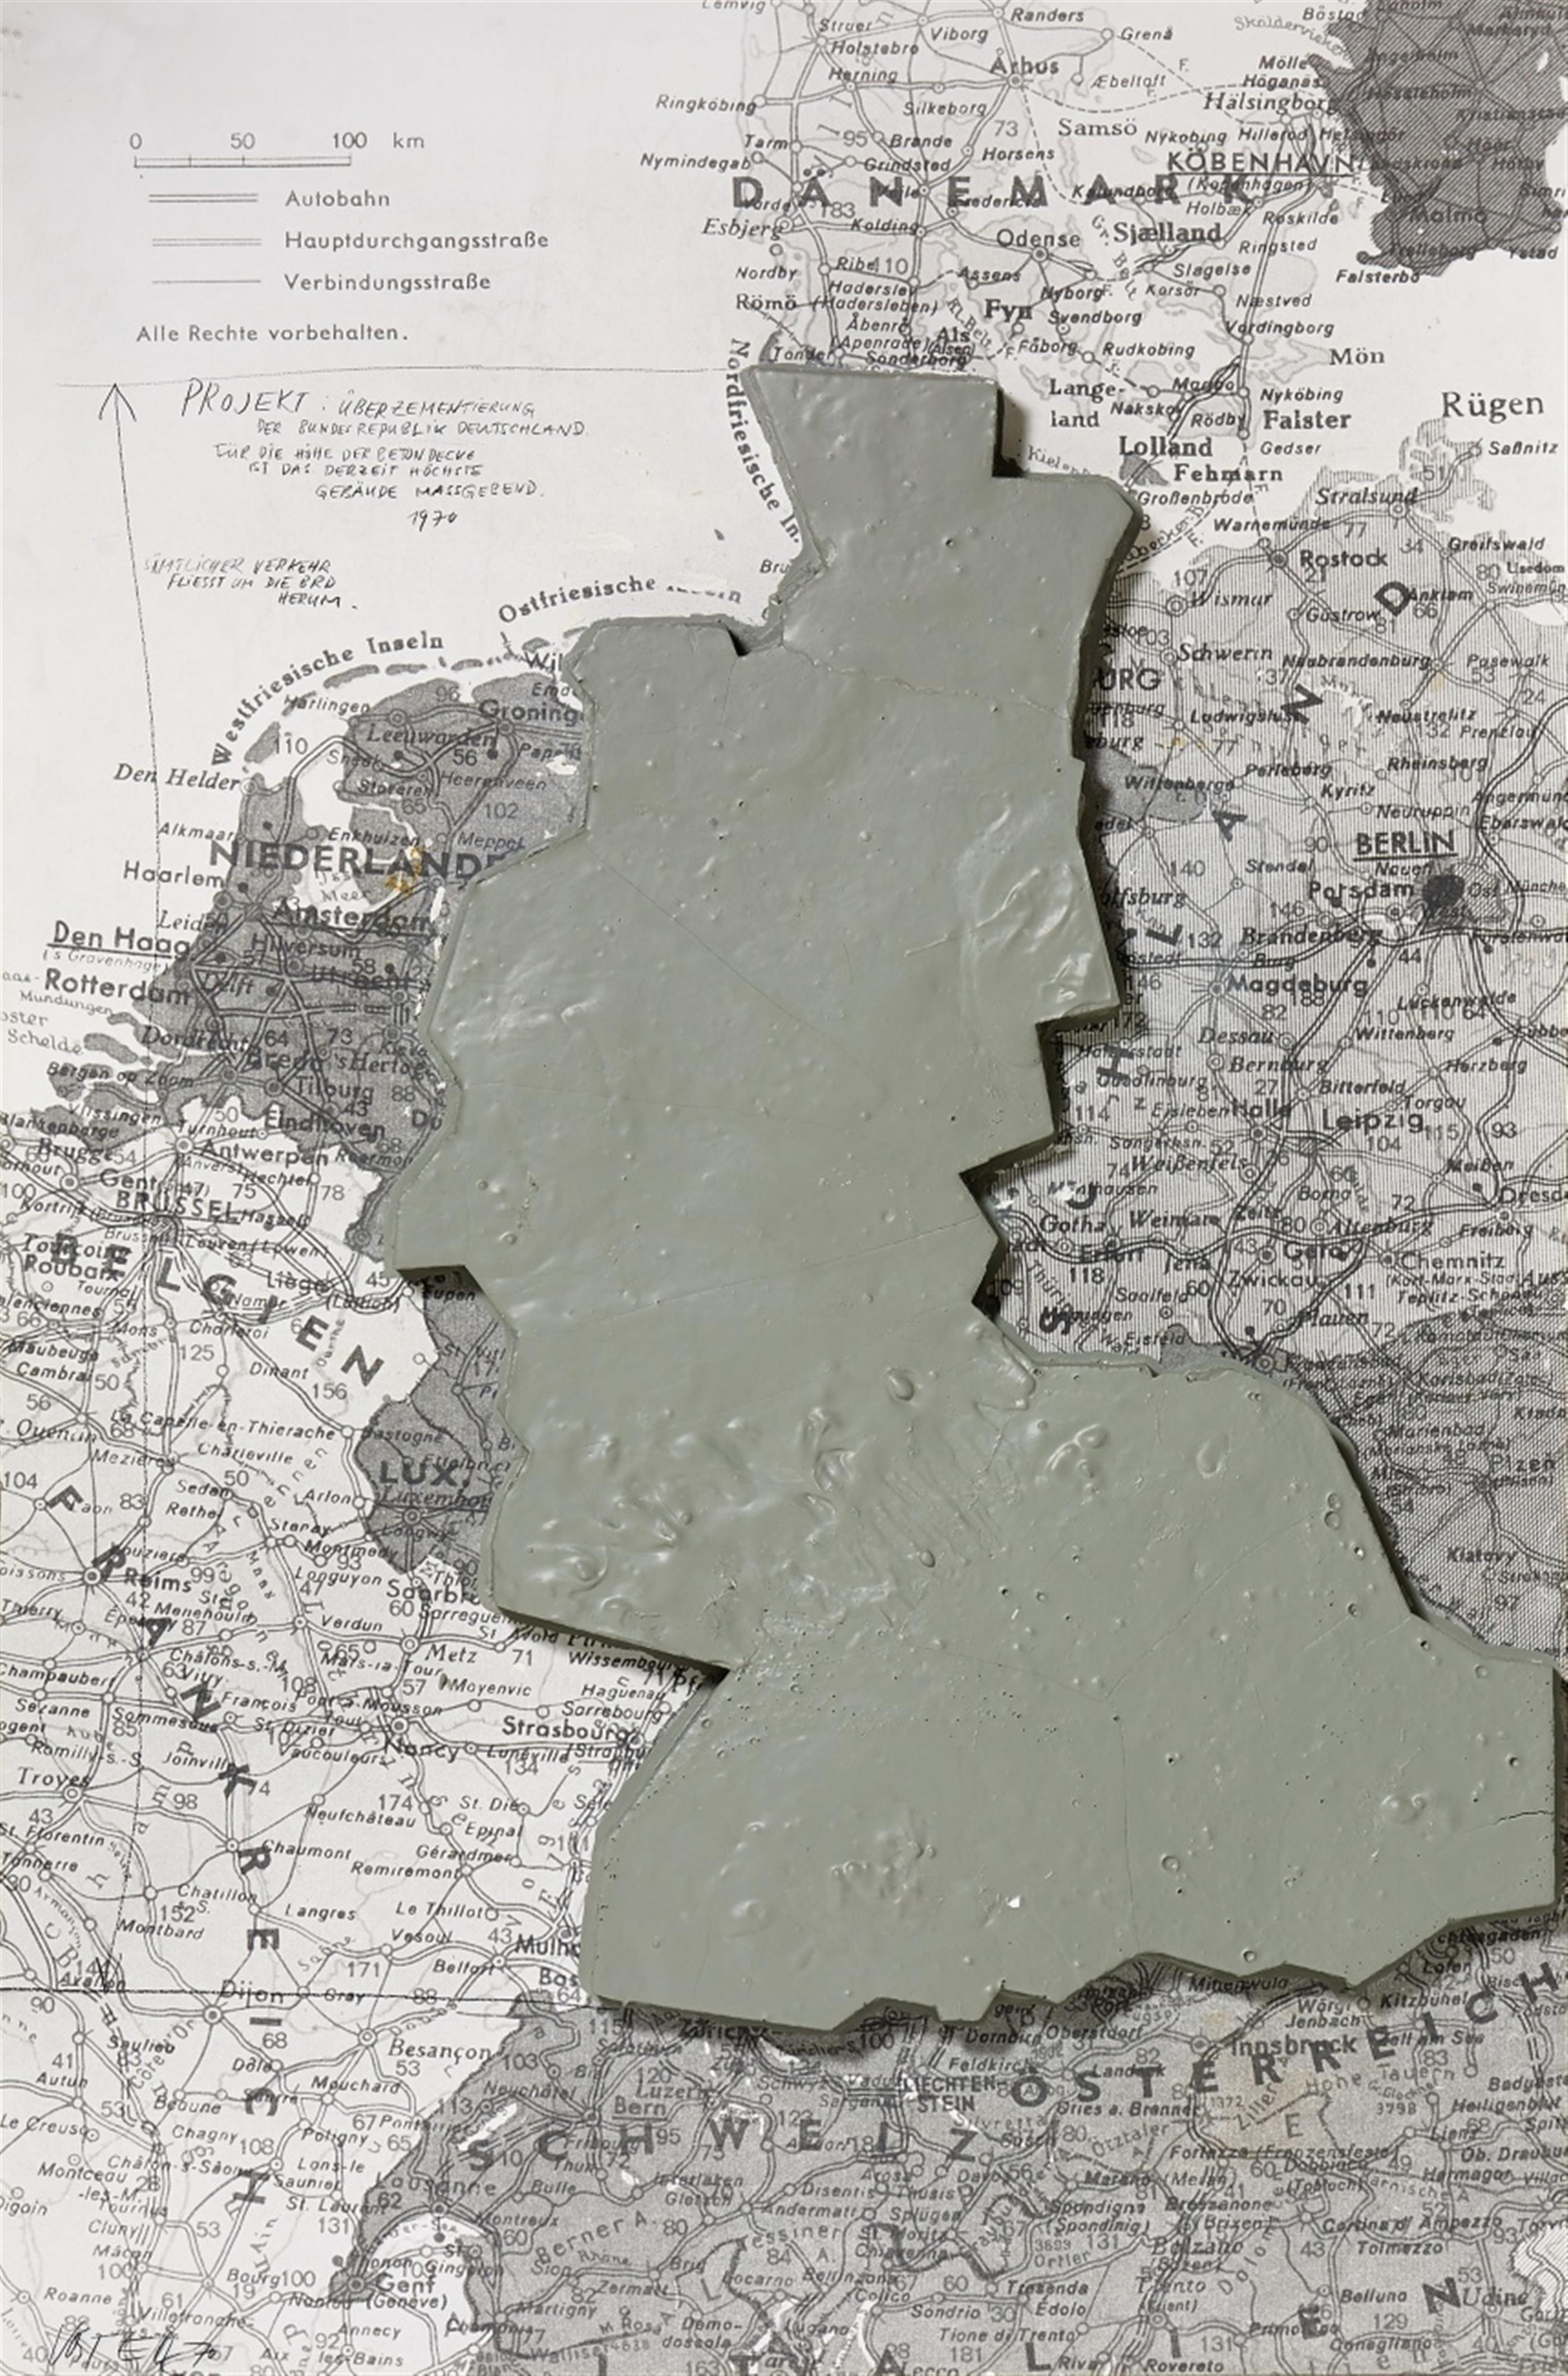 Wolf Vostell - Projekt: Überzementierung der Bundesrepublik Deutschland - image-1